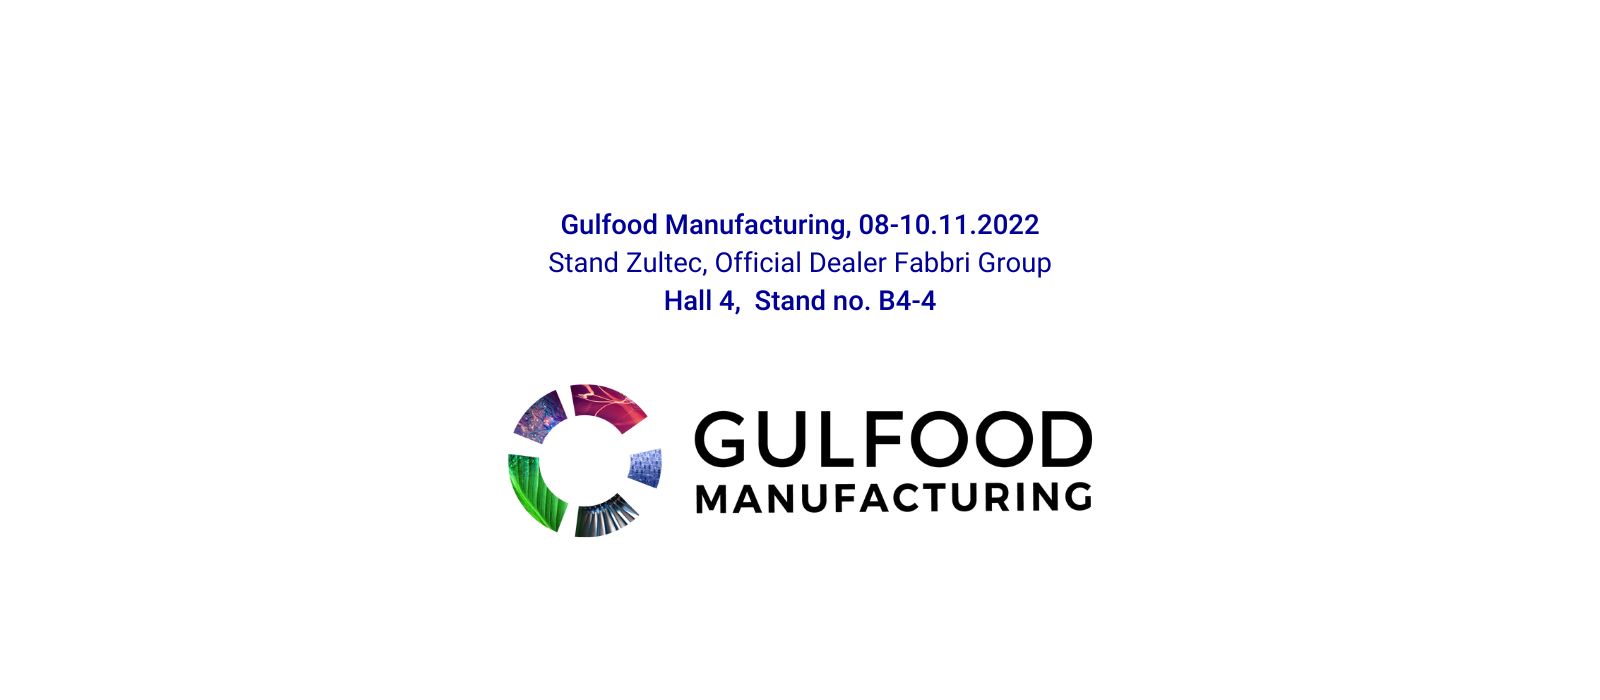 Gruppo Fabbri a Gulfood Manufacturing 2022